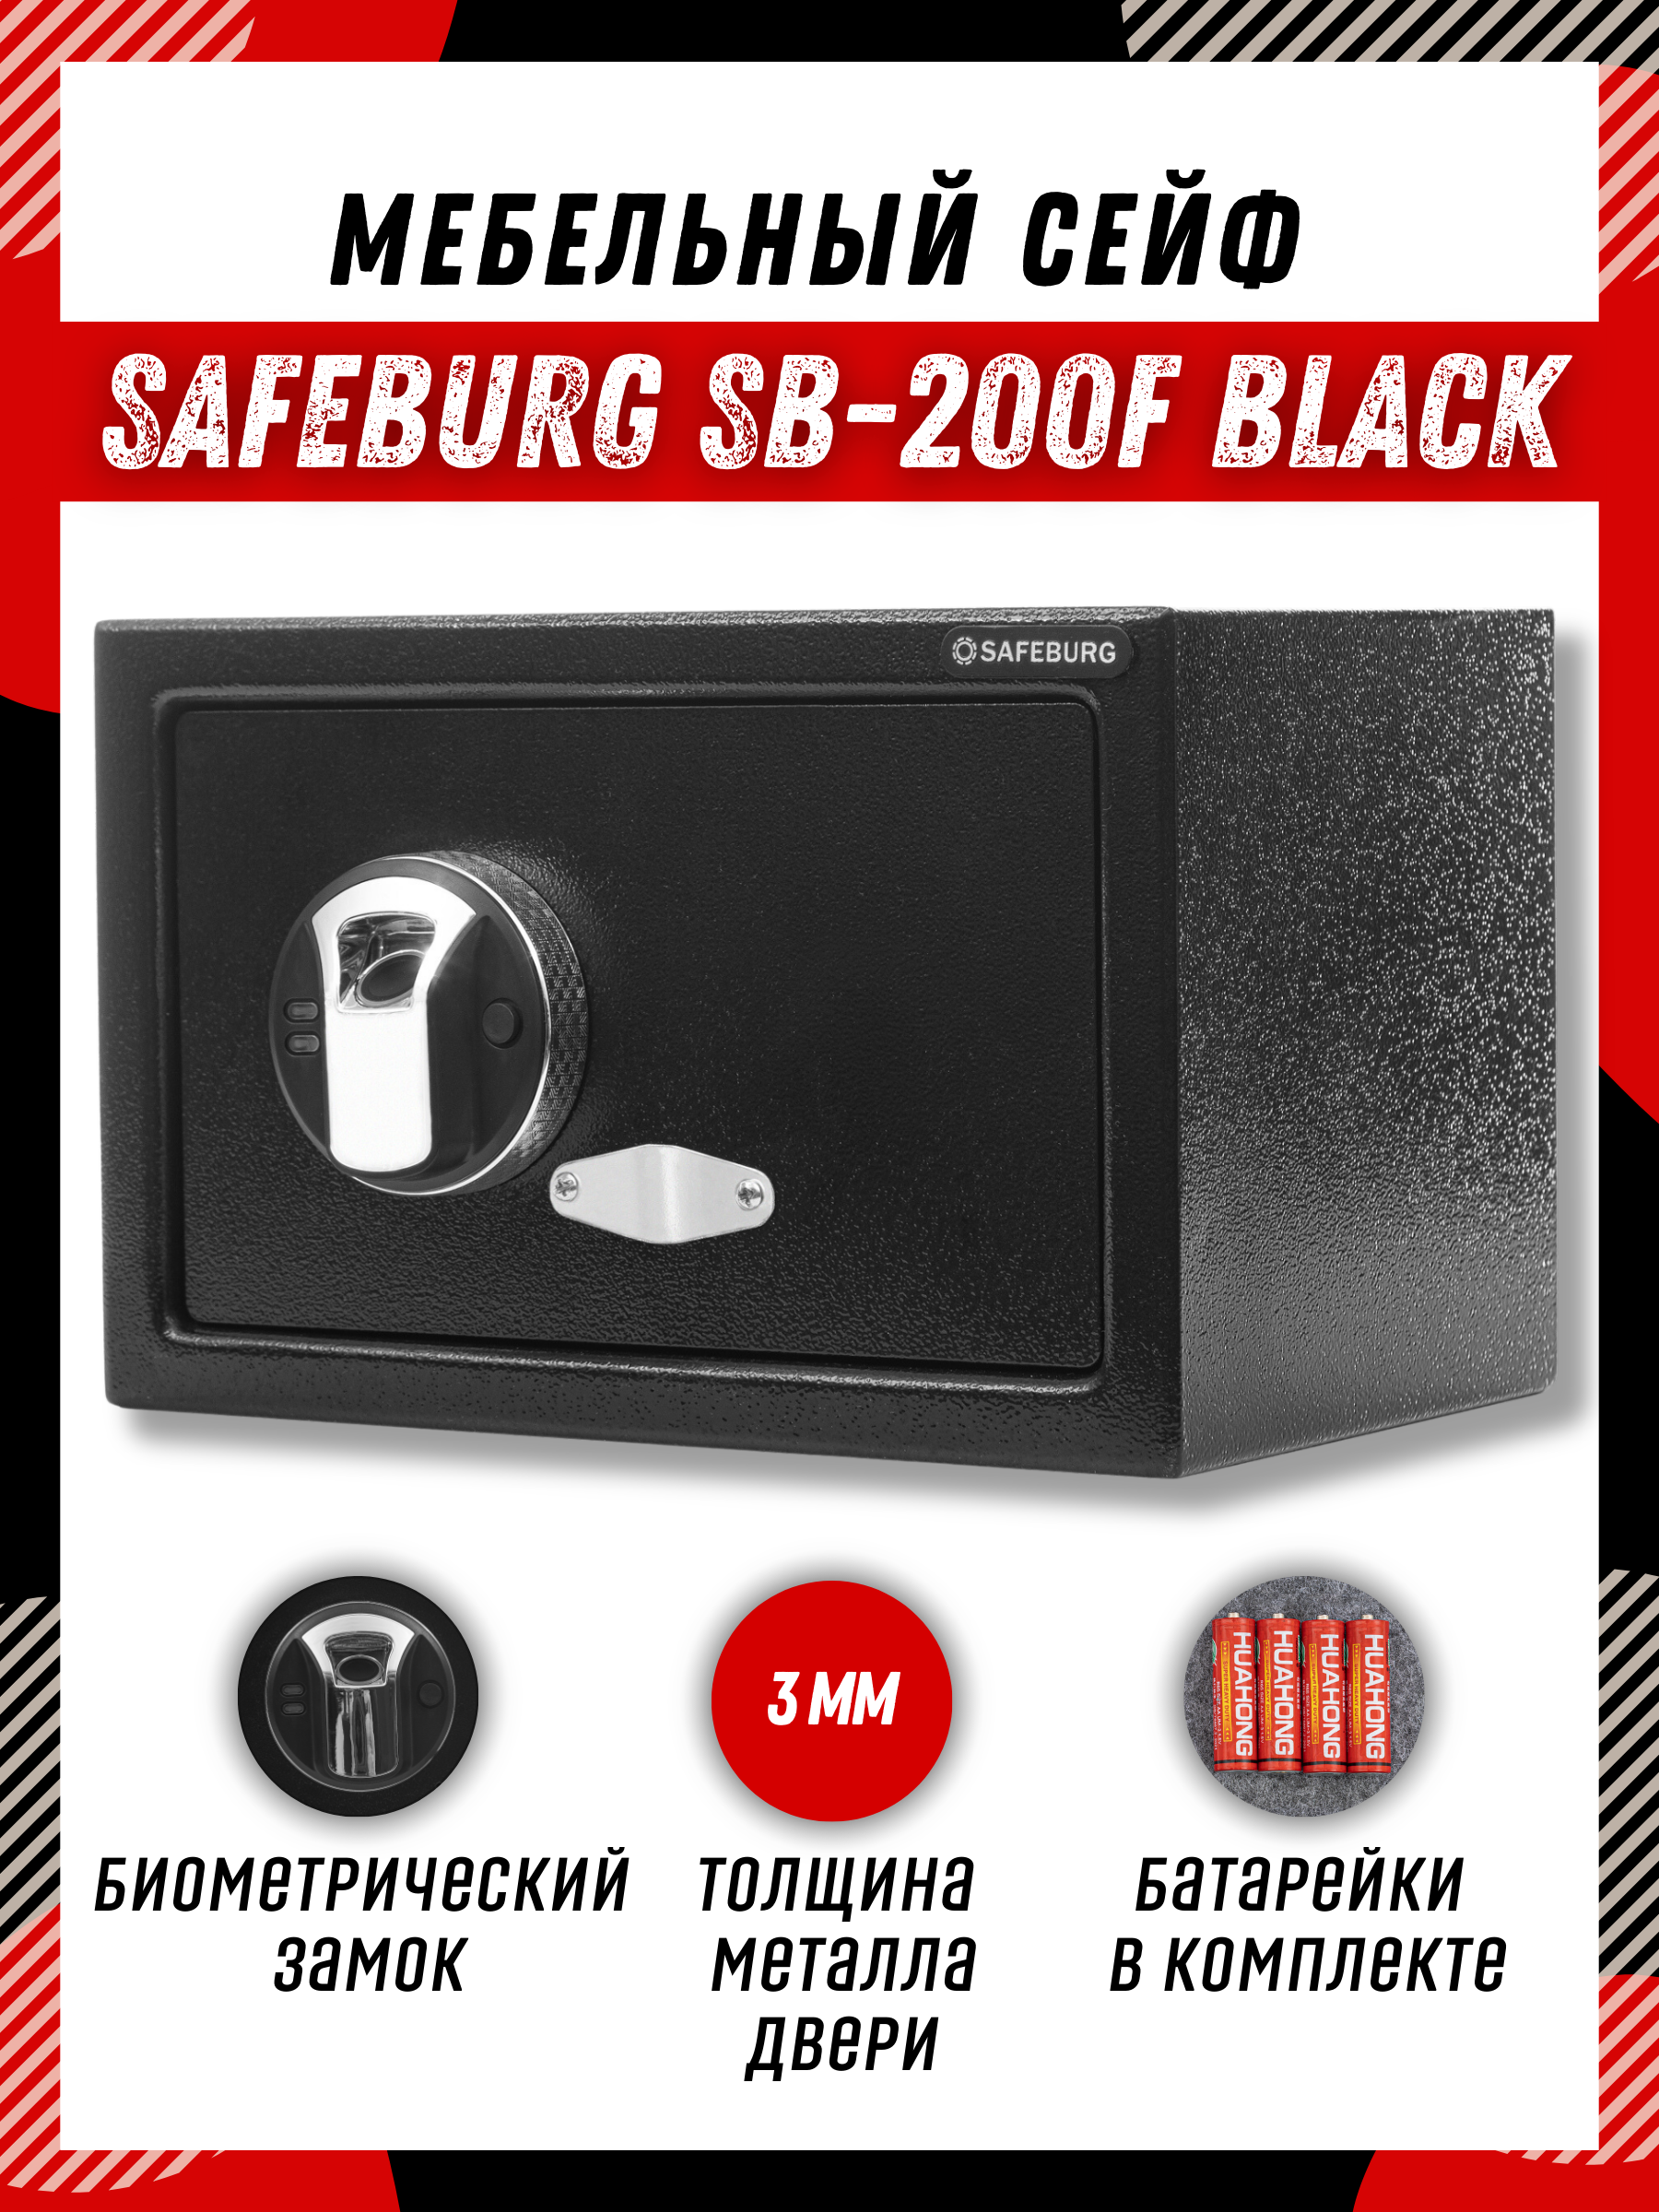 Сейф SAFEBURG SB-200F BLACK для денег и документов с биометрическим замком